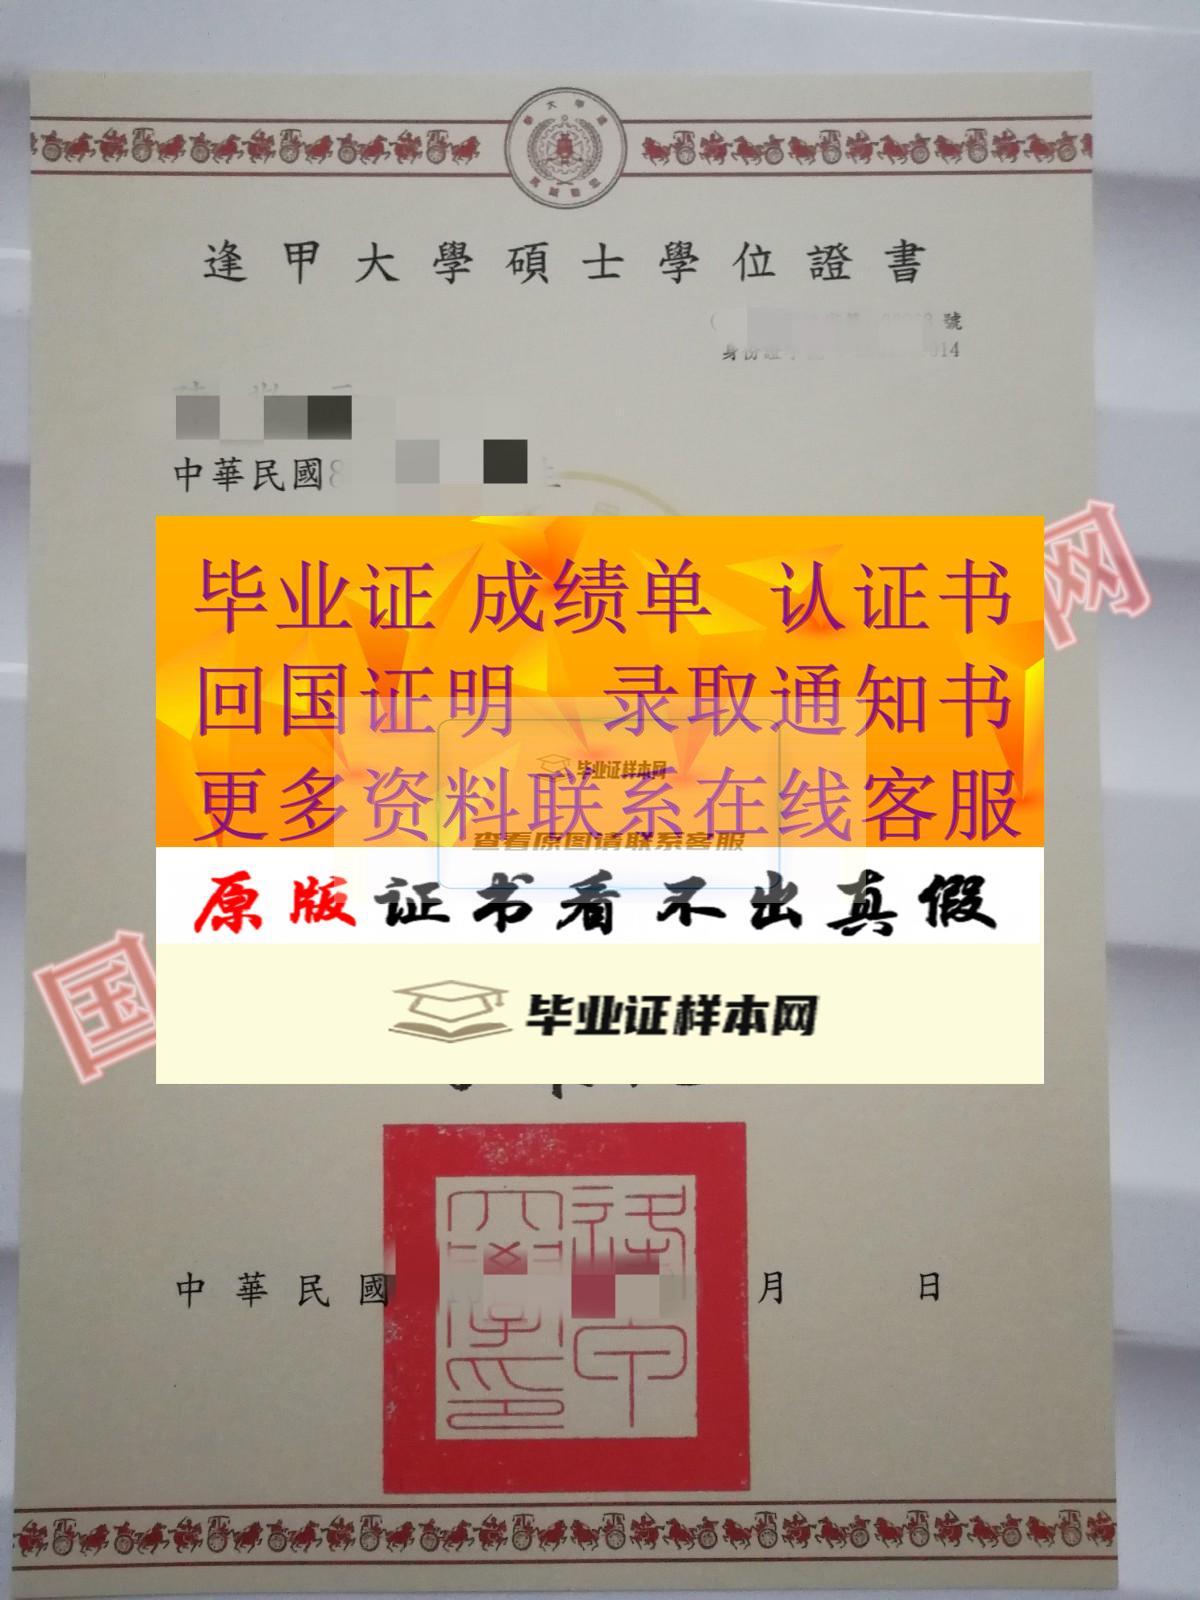 版本展示:台湾逢甲大学毕业证书样本